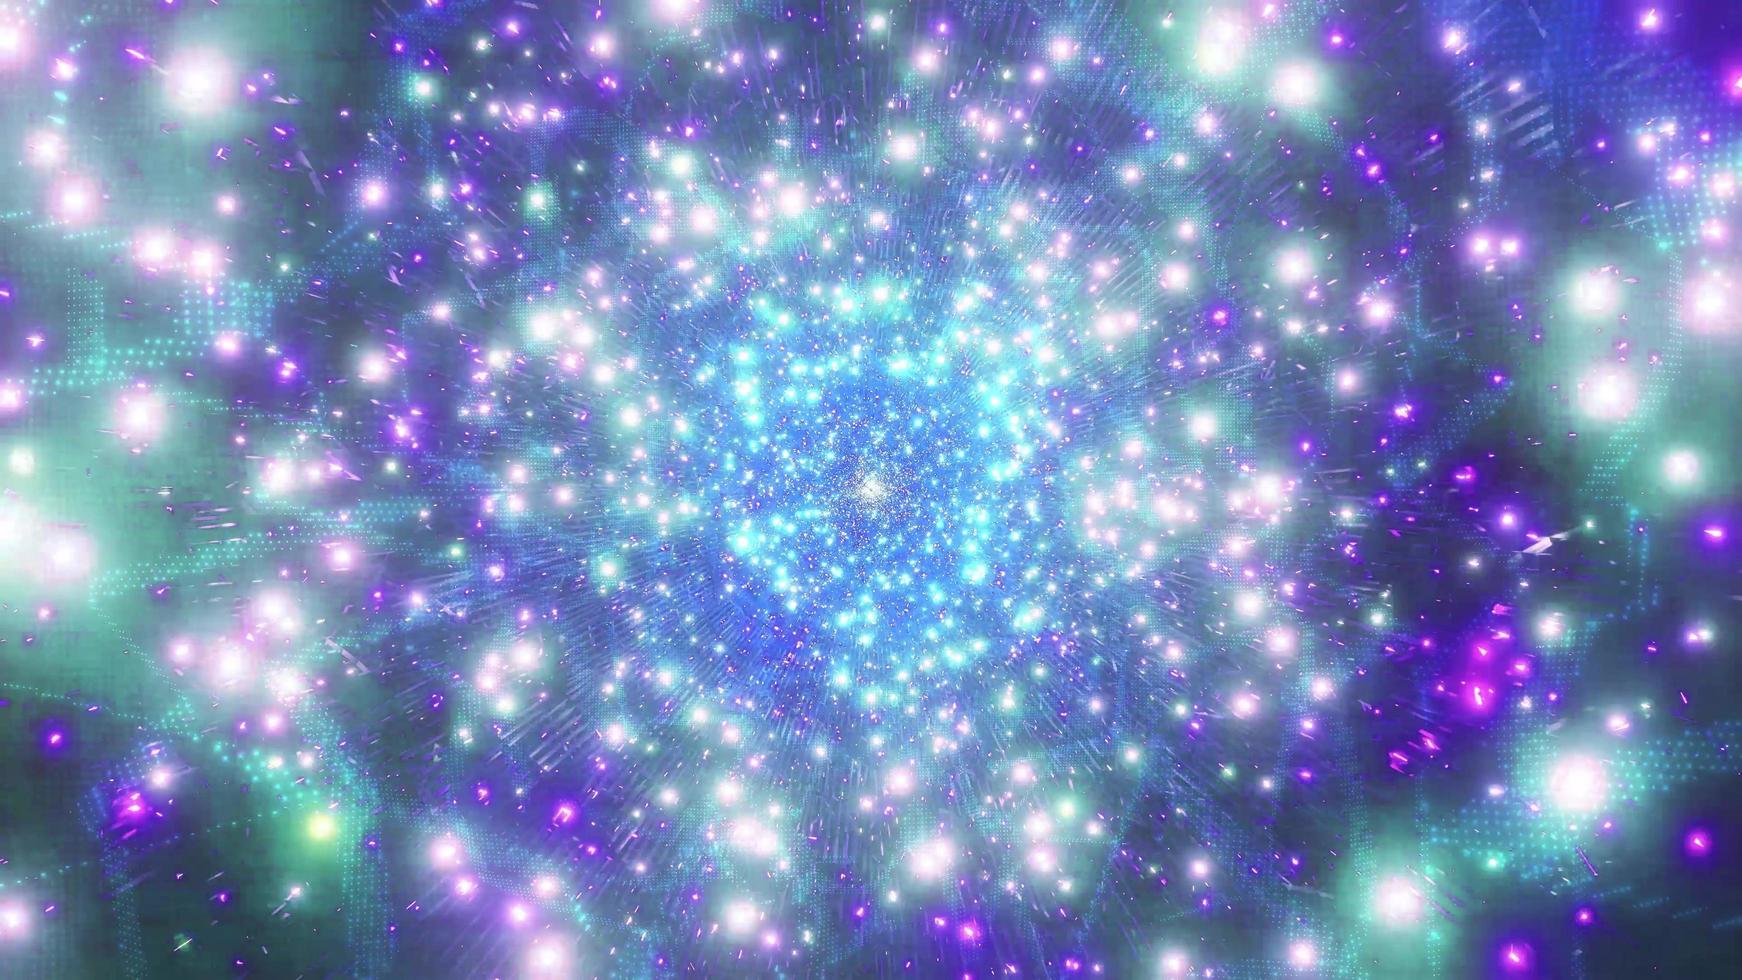 Hạt giới hạn là những hạt sáng lấp lánh nhưng vô cùng đặc biệt và độc đáo. Đây là những hạt tuyệt vời trong vũ trụ mà không phải ai cũng có cơ hội được chiêm ngưỡng. Hãy xem ảnh liên quan để bắt đầu cuộc hành trình khám phá về những thứ đầy kỳ thú này.